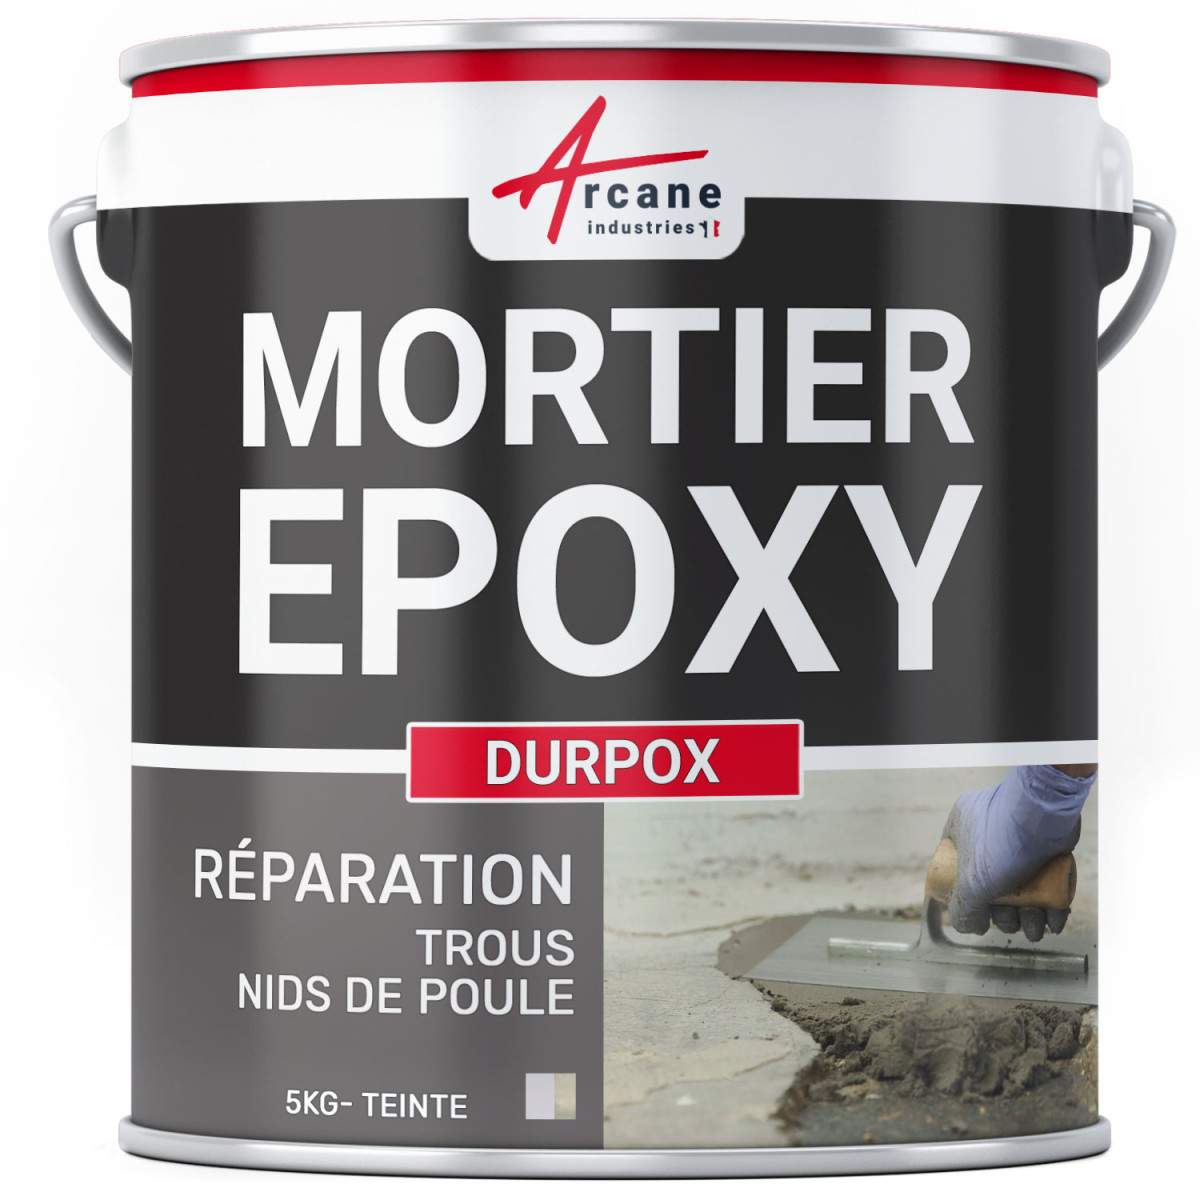 Mortier époxy pour ragréage, DURPOX